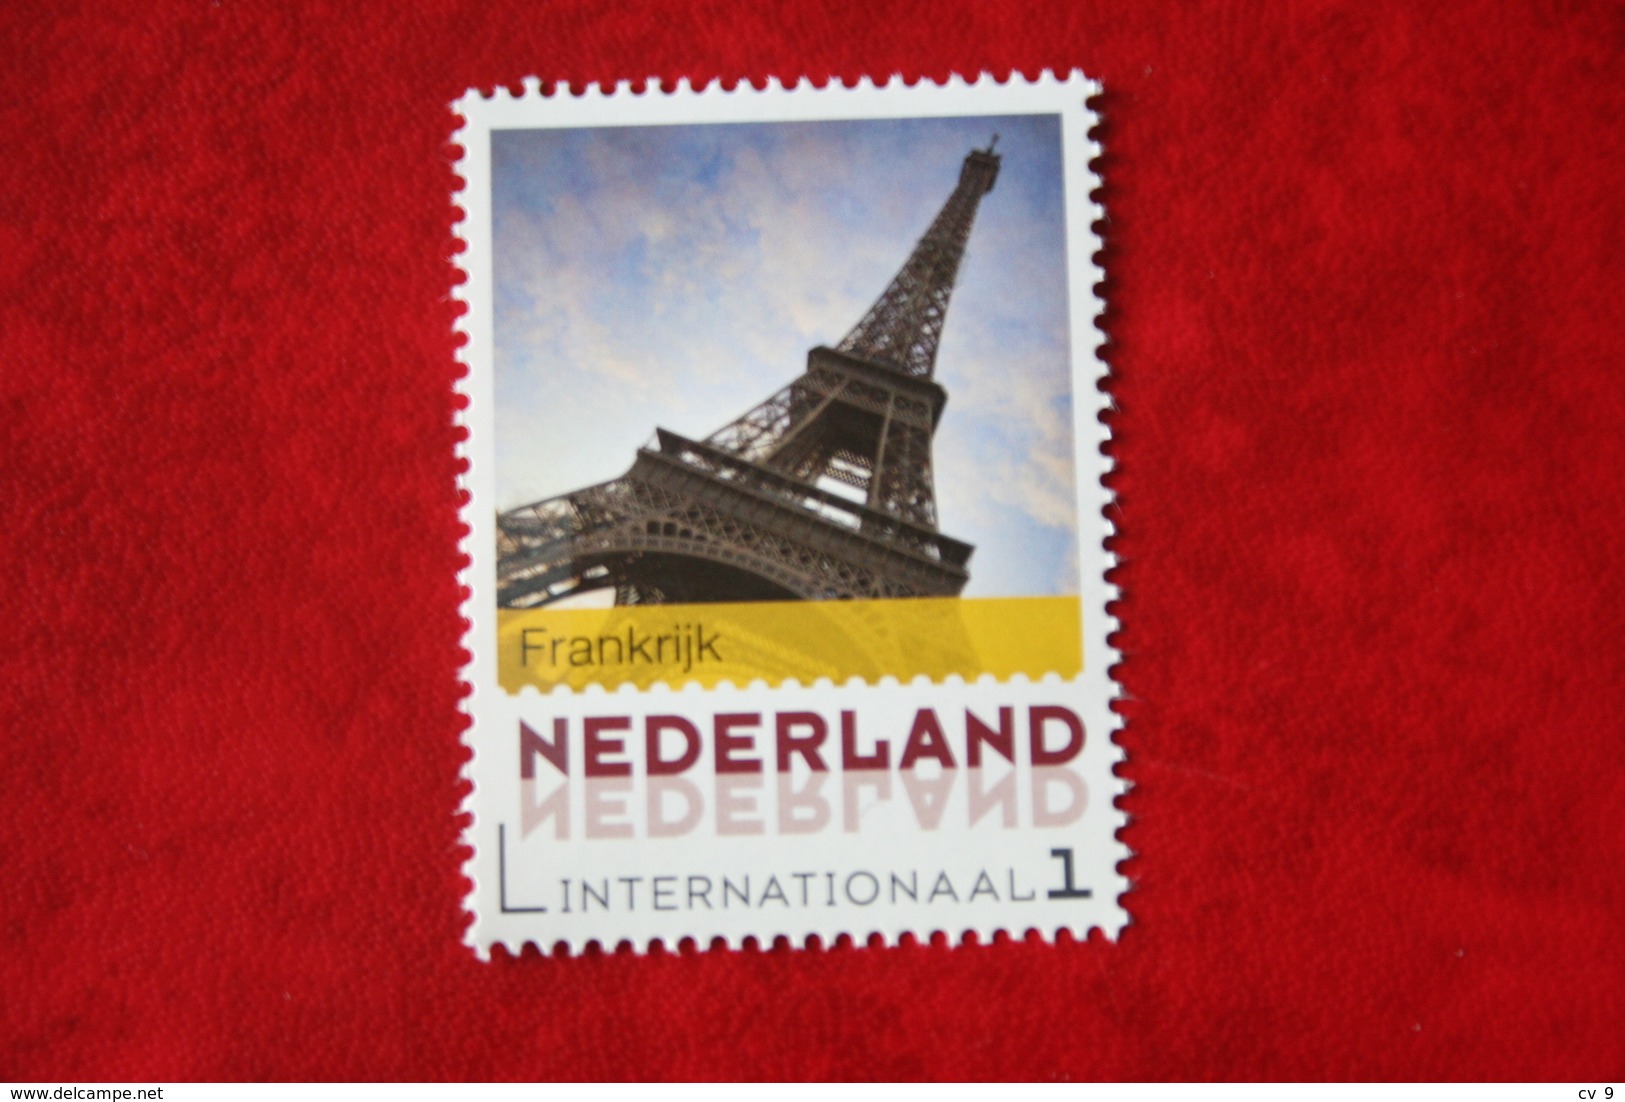 Europa Zegel PARIJS EIFFELTOWER LA TOUR EIFFEL 2016 POSTFRIS MNH ** NEDERLAND / NIEDERLANDE / NETHERLANDS - Unused Stamps